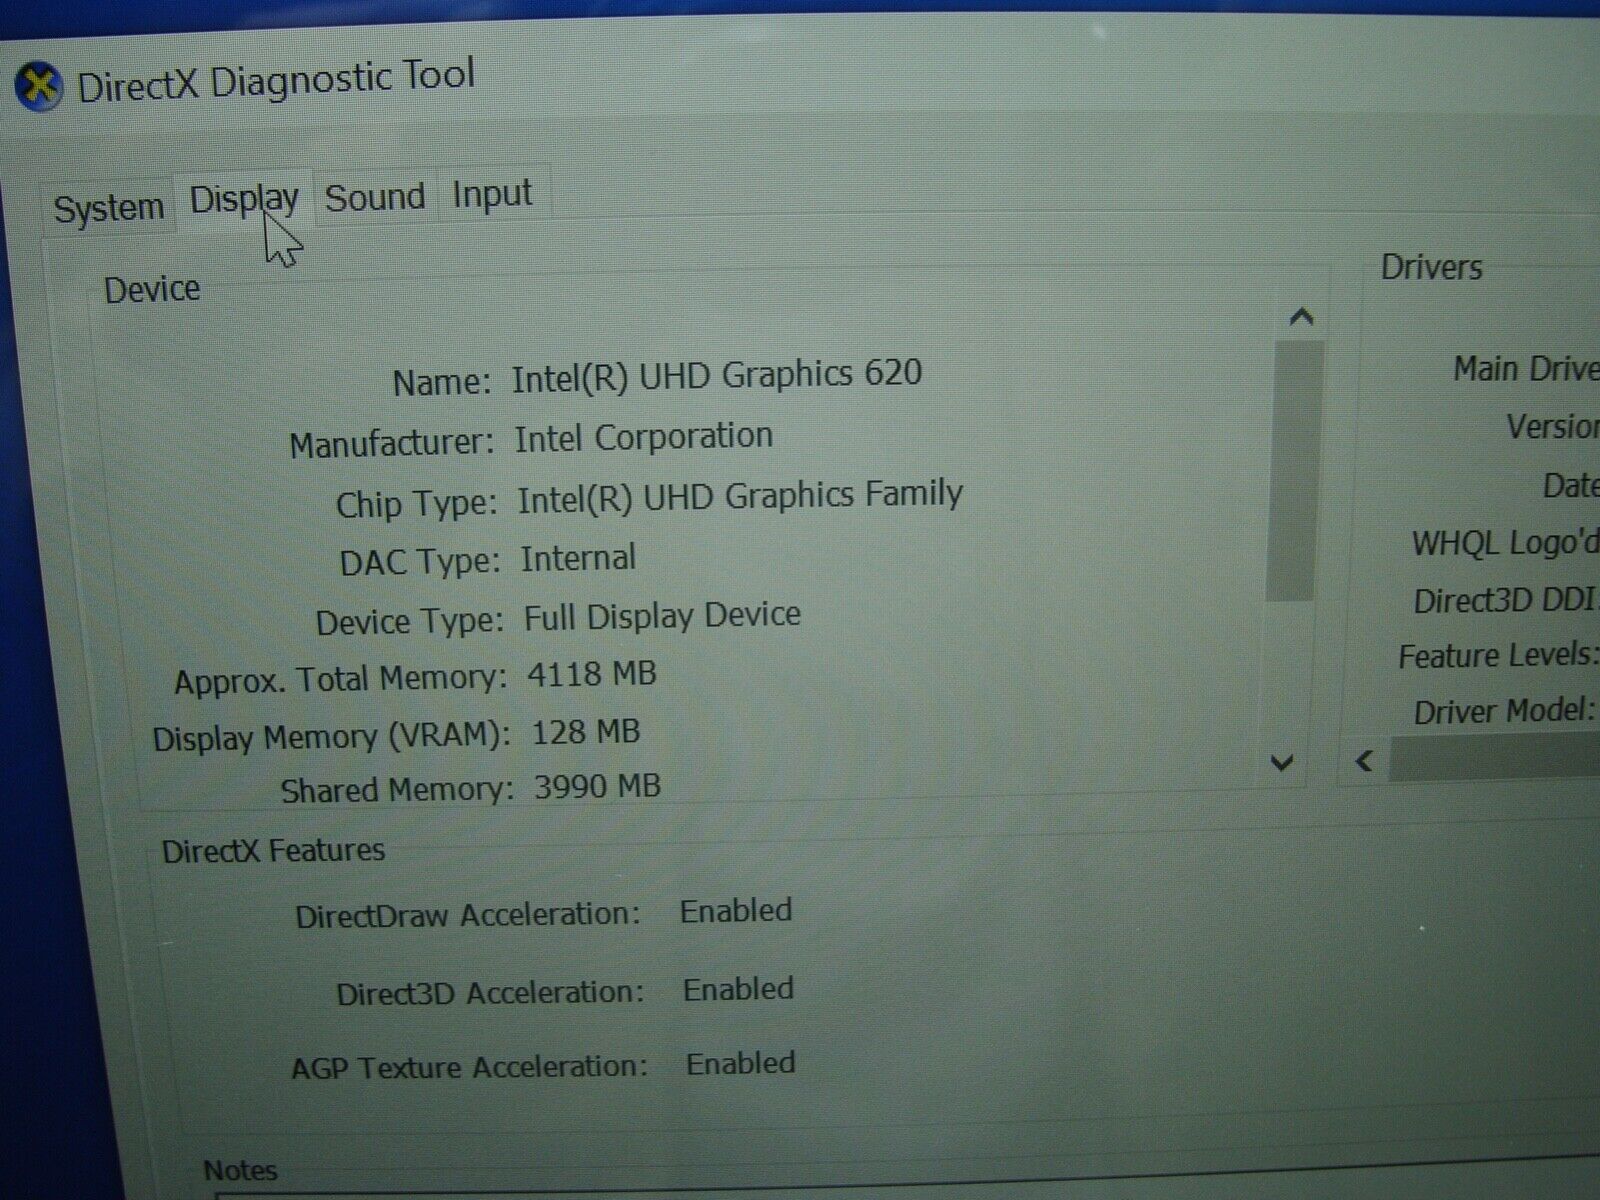 Warranty Dell Latitude 13 3310 2-in-1 13.3FHD TOUCH i5-8365U 8GB RAM 256GB SSD